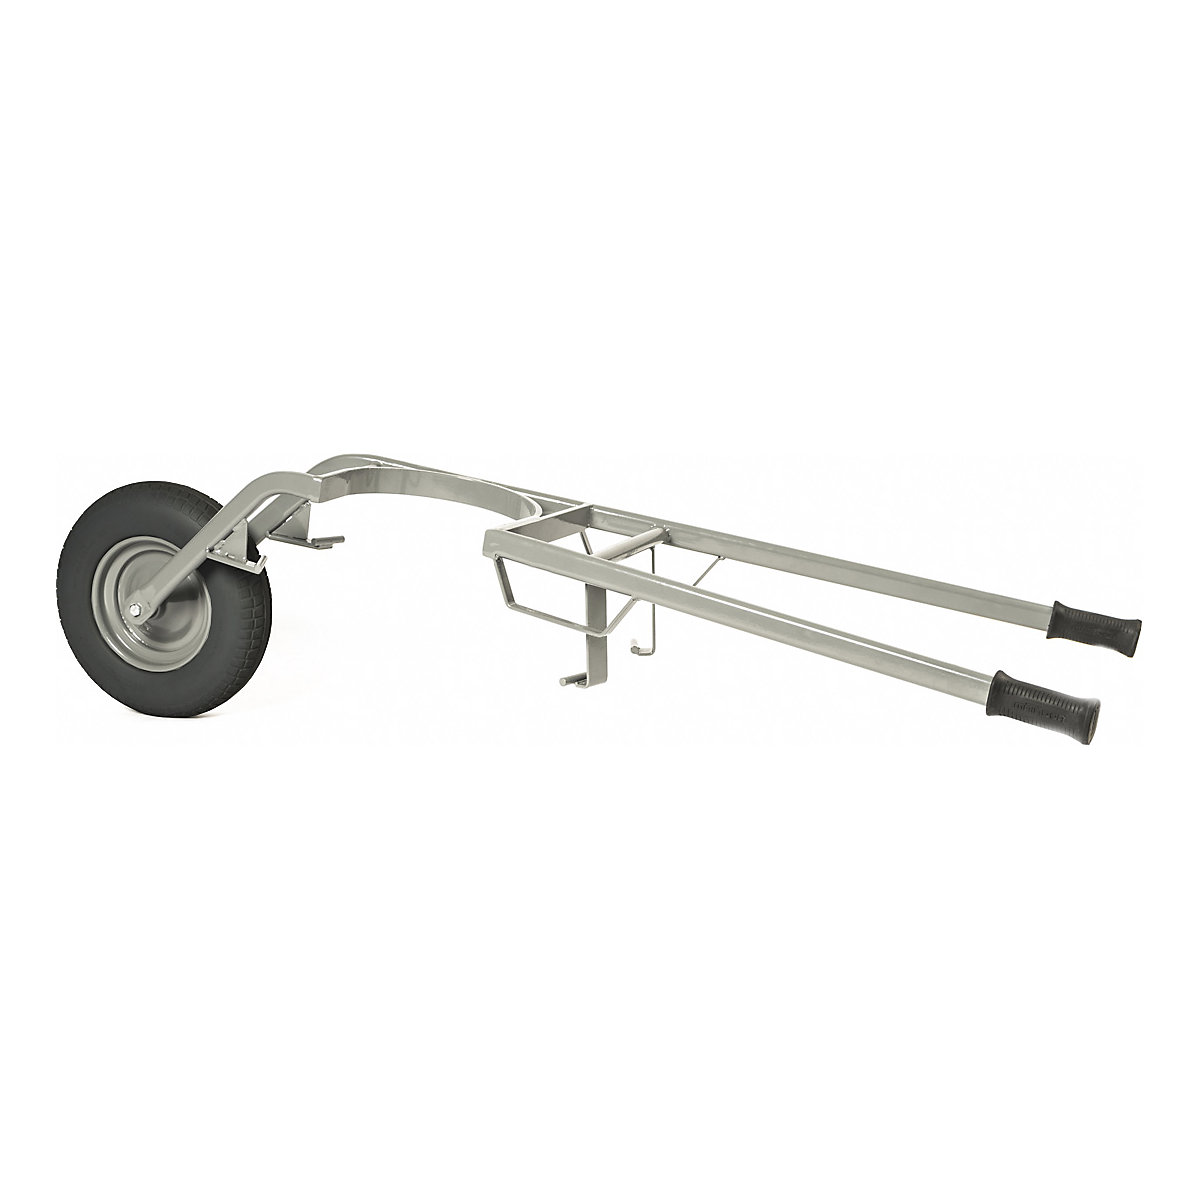 Mortar tub wheel barrow – MATADOR, max. load 250 kg, pneumatic tyres, 4+ items-1